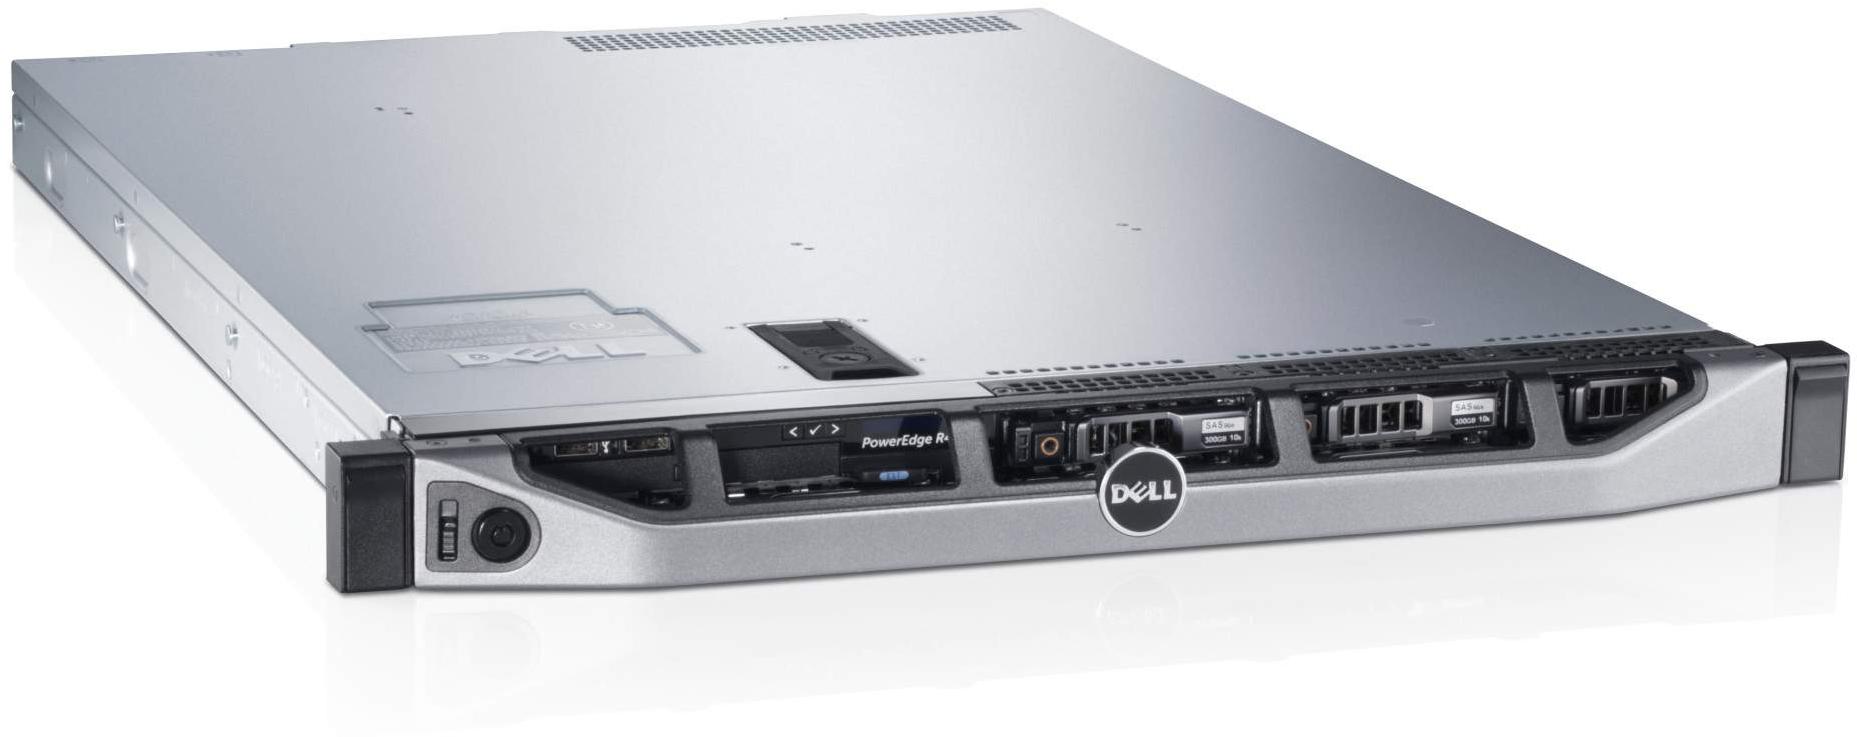     Dell PowerEdge R620 (210-39504-10)  2